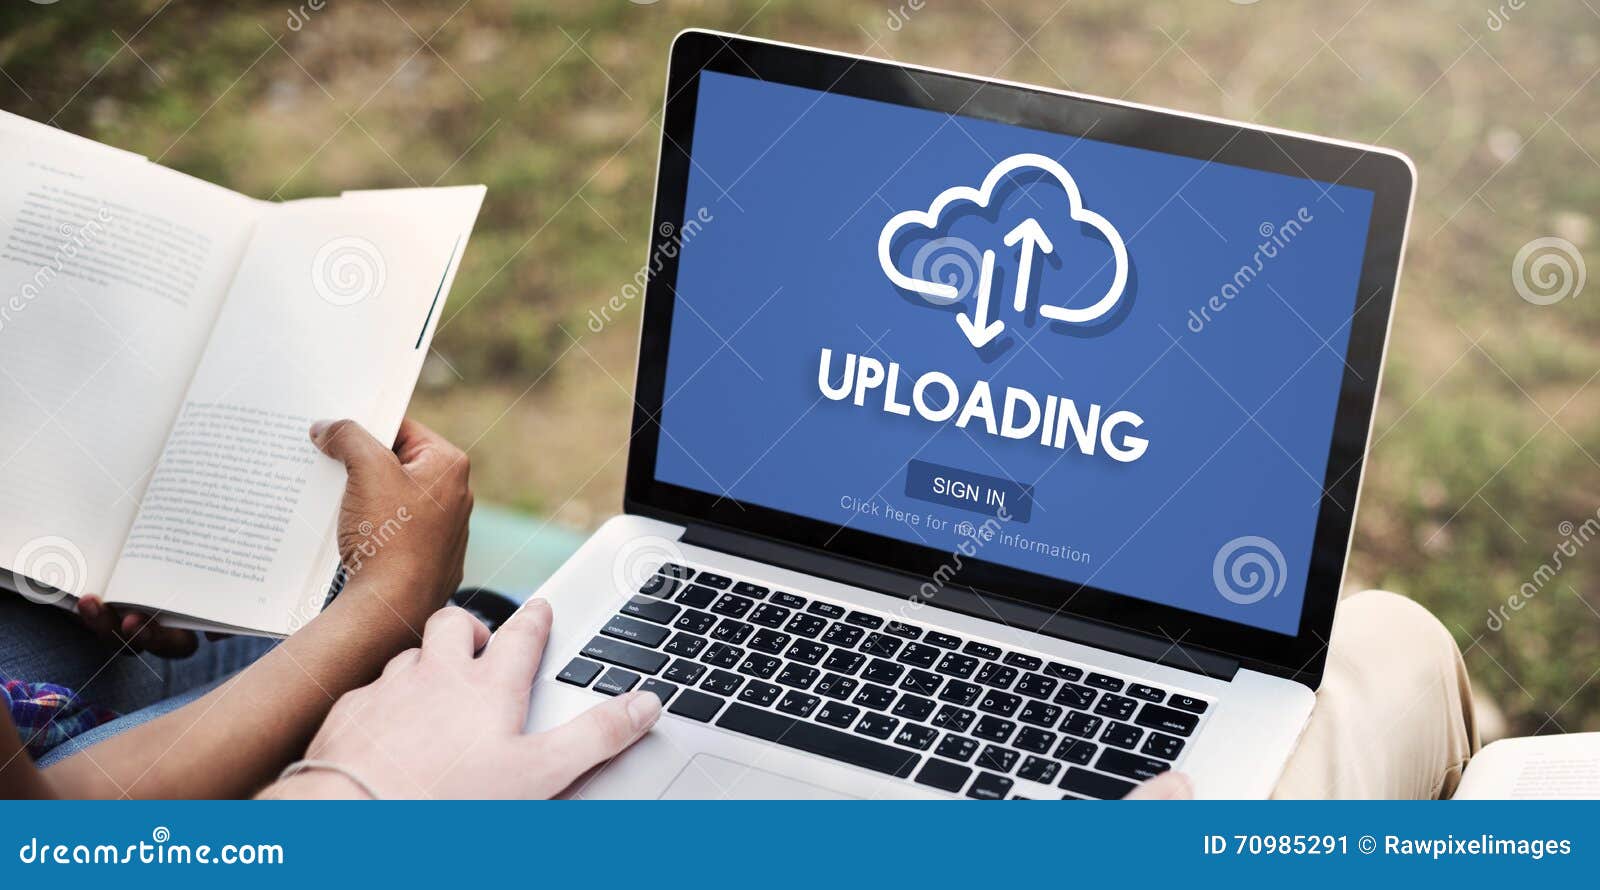 uploading upload data download information concept